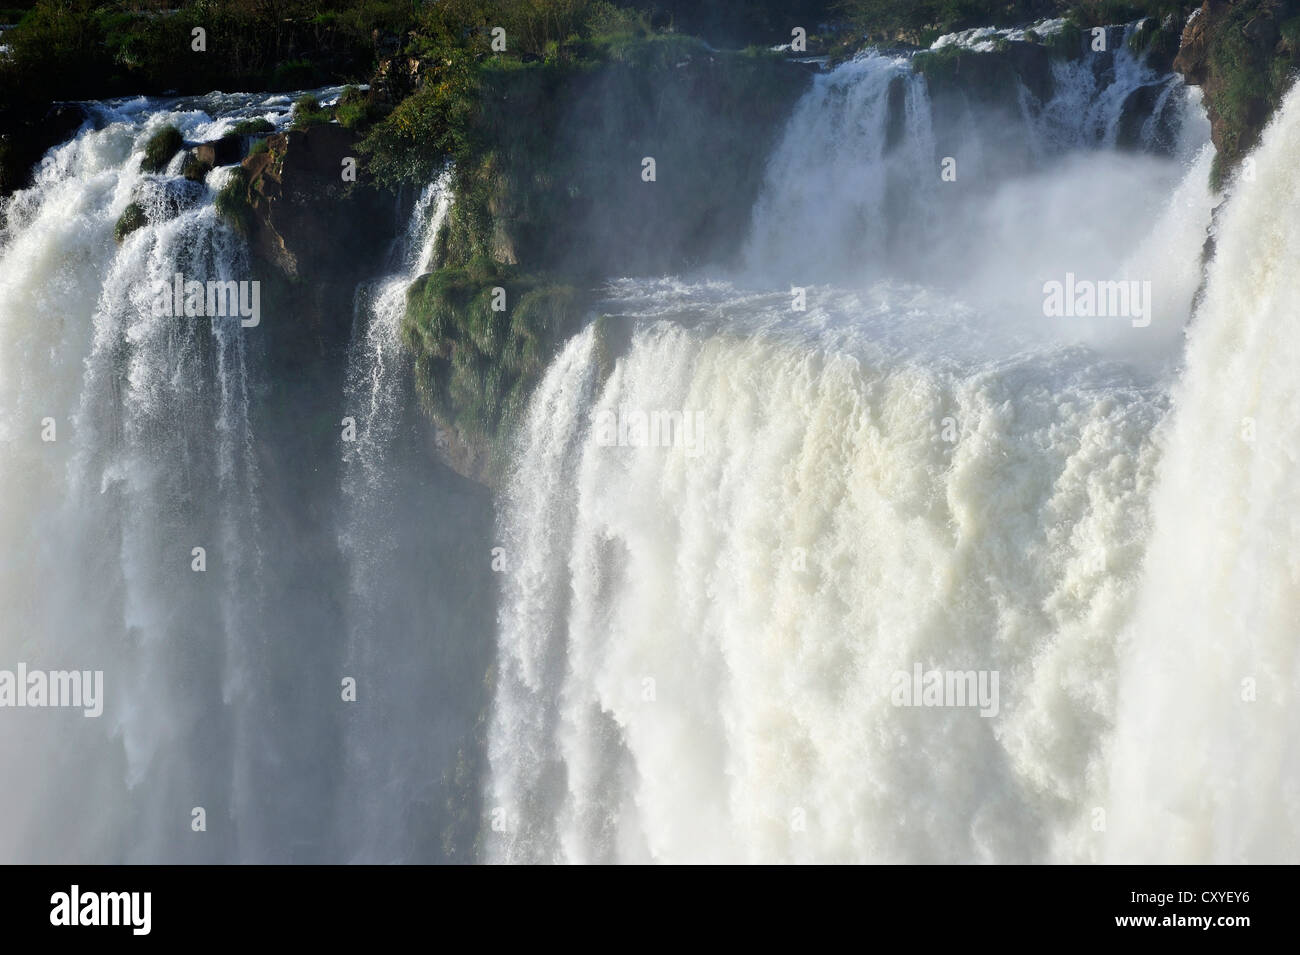 Cascades à la Gorge du Diable, Garganta del Diablo, chutes d'Iguacu Falls ou au patrimoine mondial de l'UNESCO, à la frontière du Brésil Banque D'Images